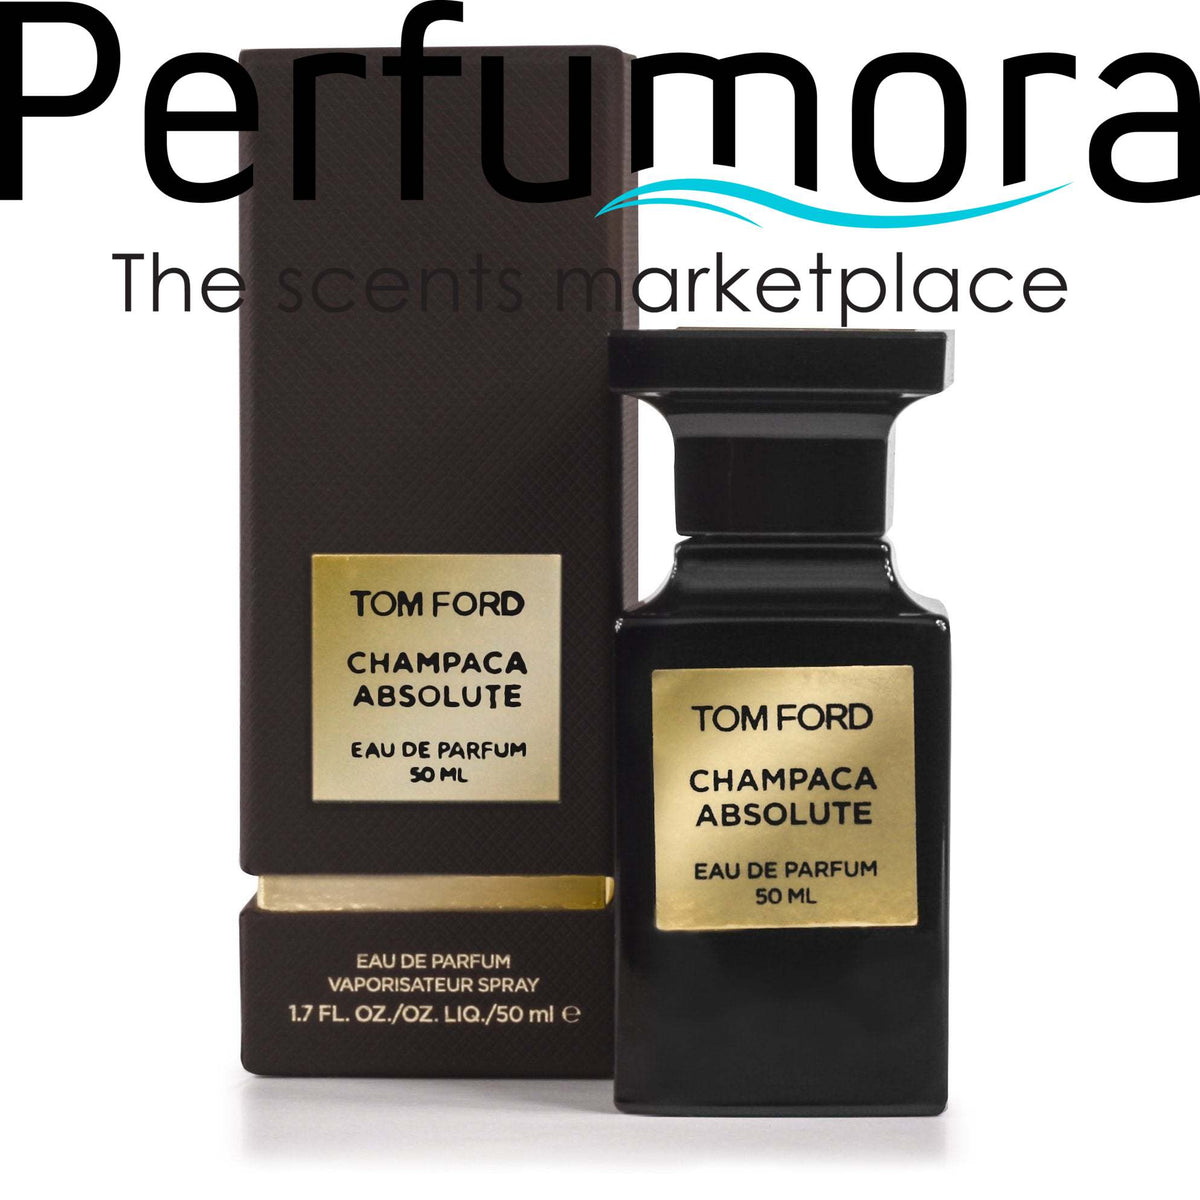 Champaca Absolute Eau de Parfum Spray for Women and Men by Tom Ford 1.7 oz.